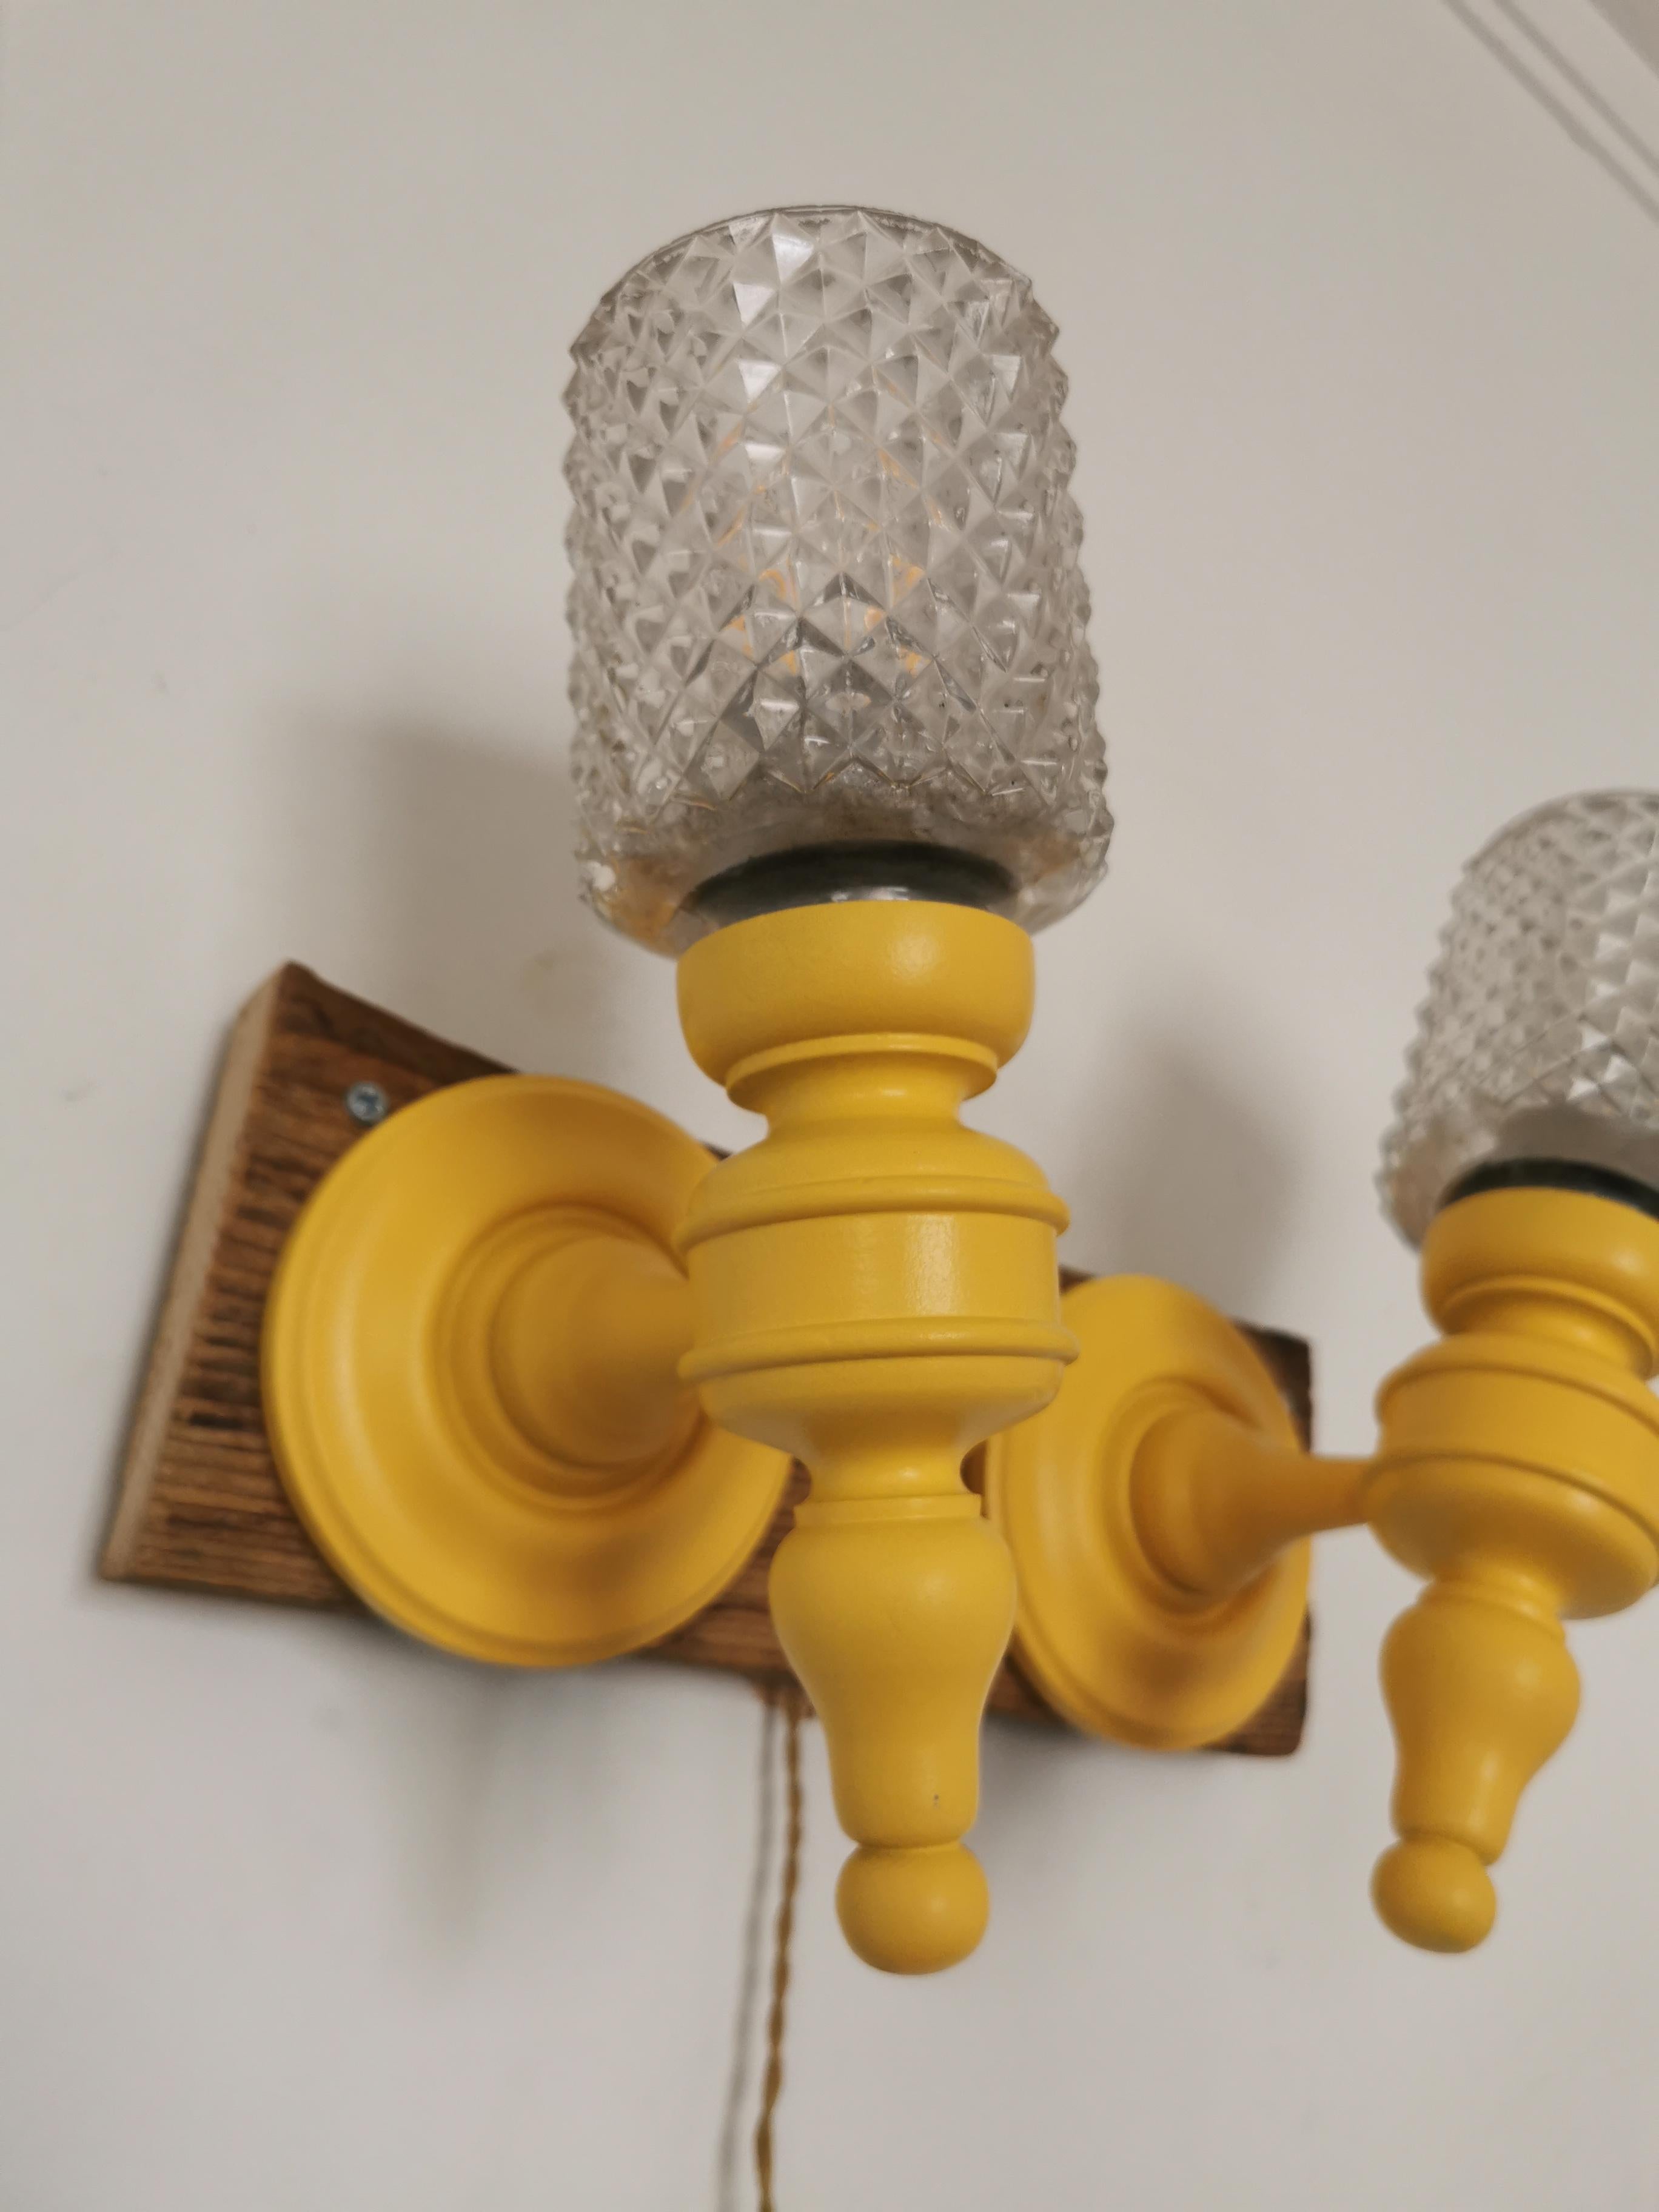 Paire d'appliques made in France
Type traditionnel
Revisité en version pop jaune 
Globes en verre taillé type art déco
Mix unique
Parfait état de fonctionnement
Aucun défaut